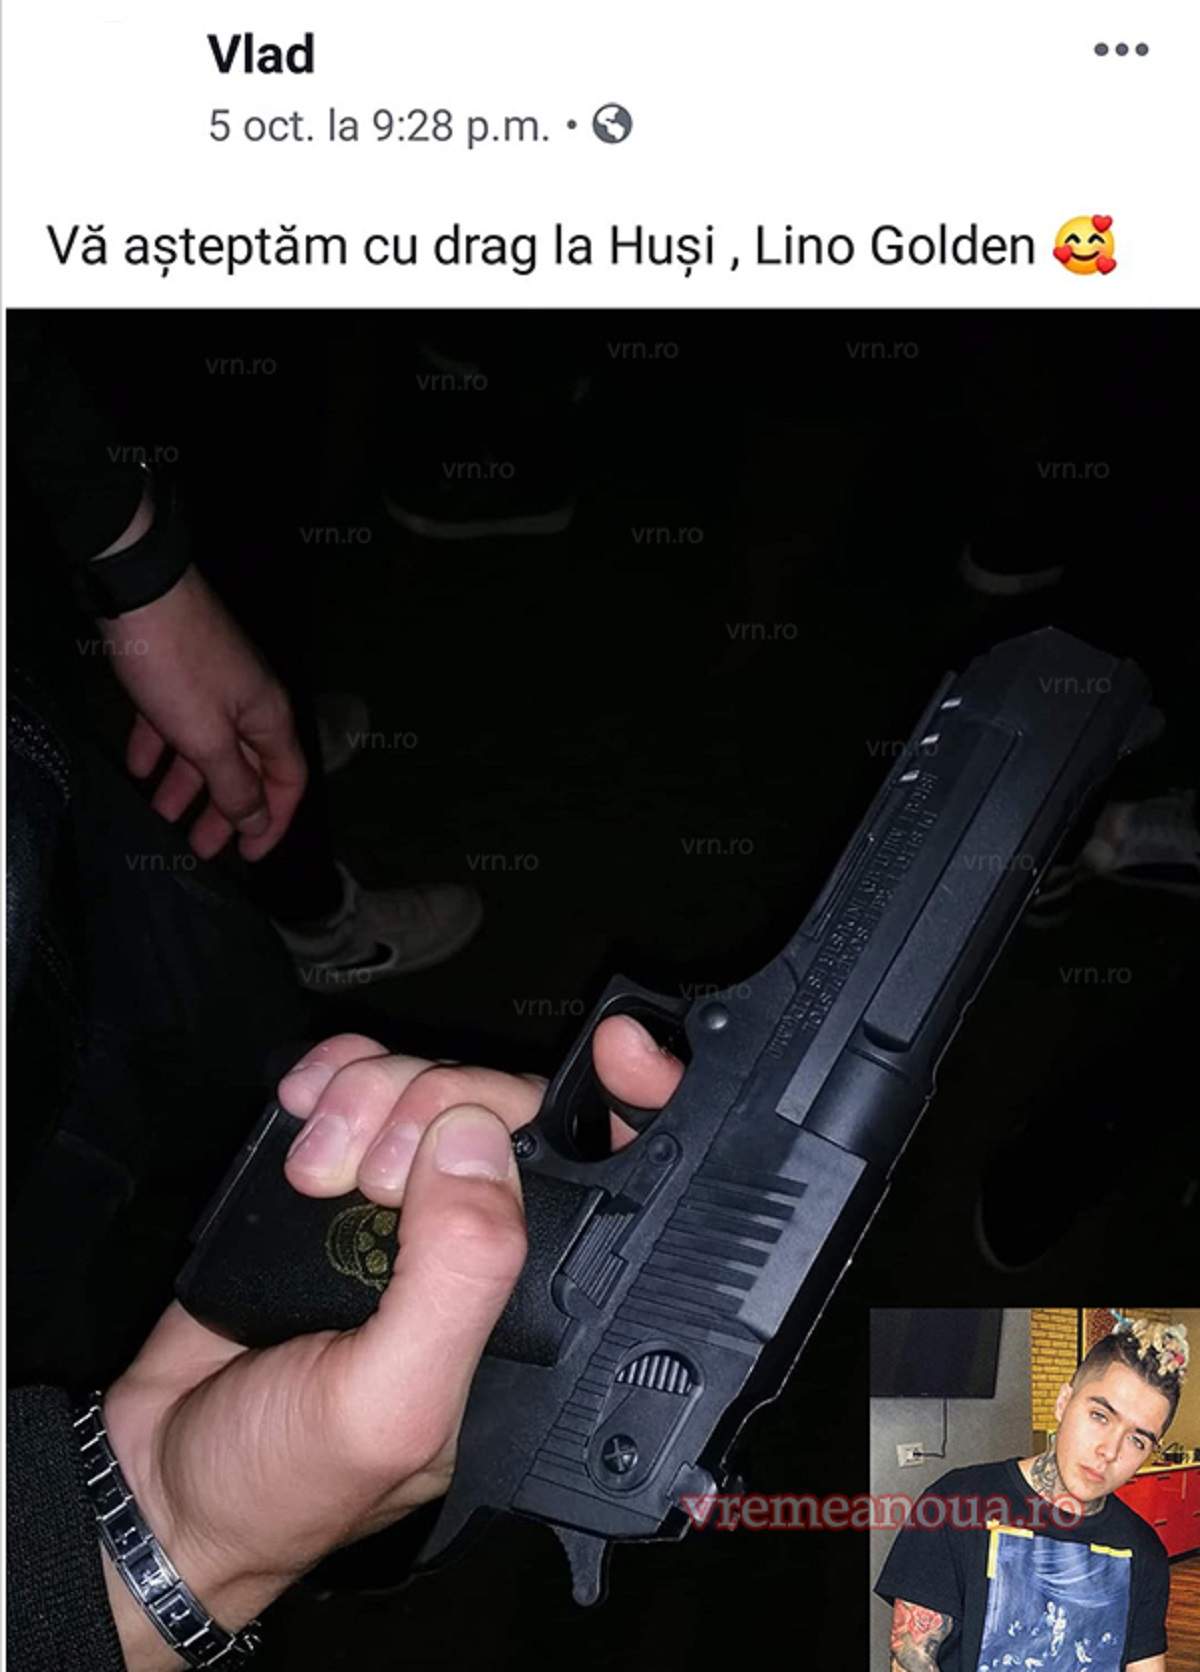 Lino Golden, împuşcat în timpul unui concert în Huşi! Nu s-a luat nicio măsură